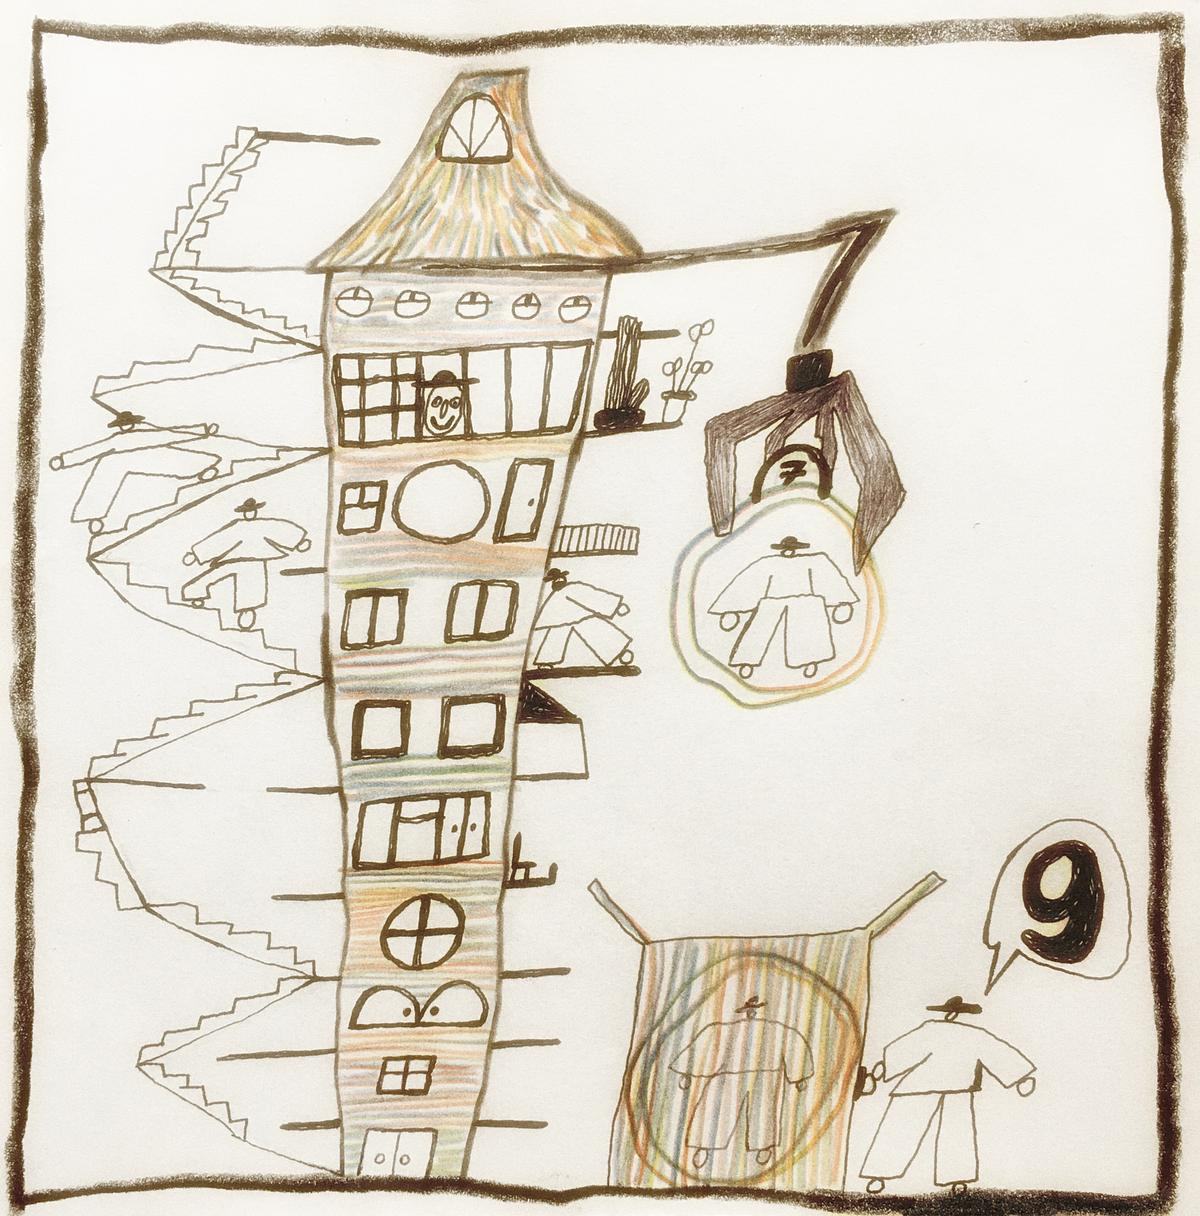 Титульное изображение для страницы события: рисунок, расшаряющийся кверху многоэтажный накренившийся дом с выносными лестницами, населенный людьми в шляпах